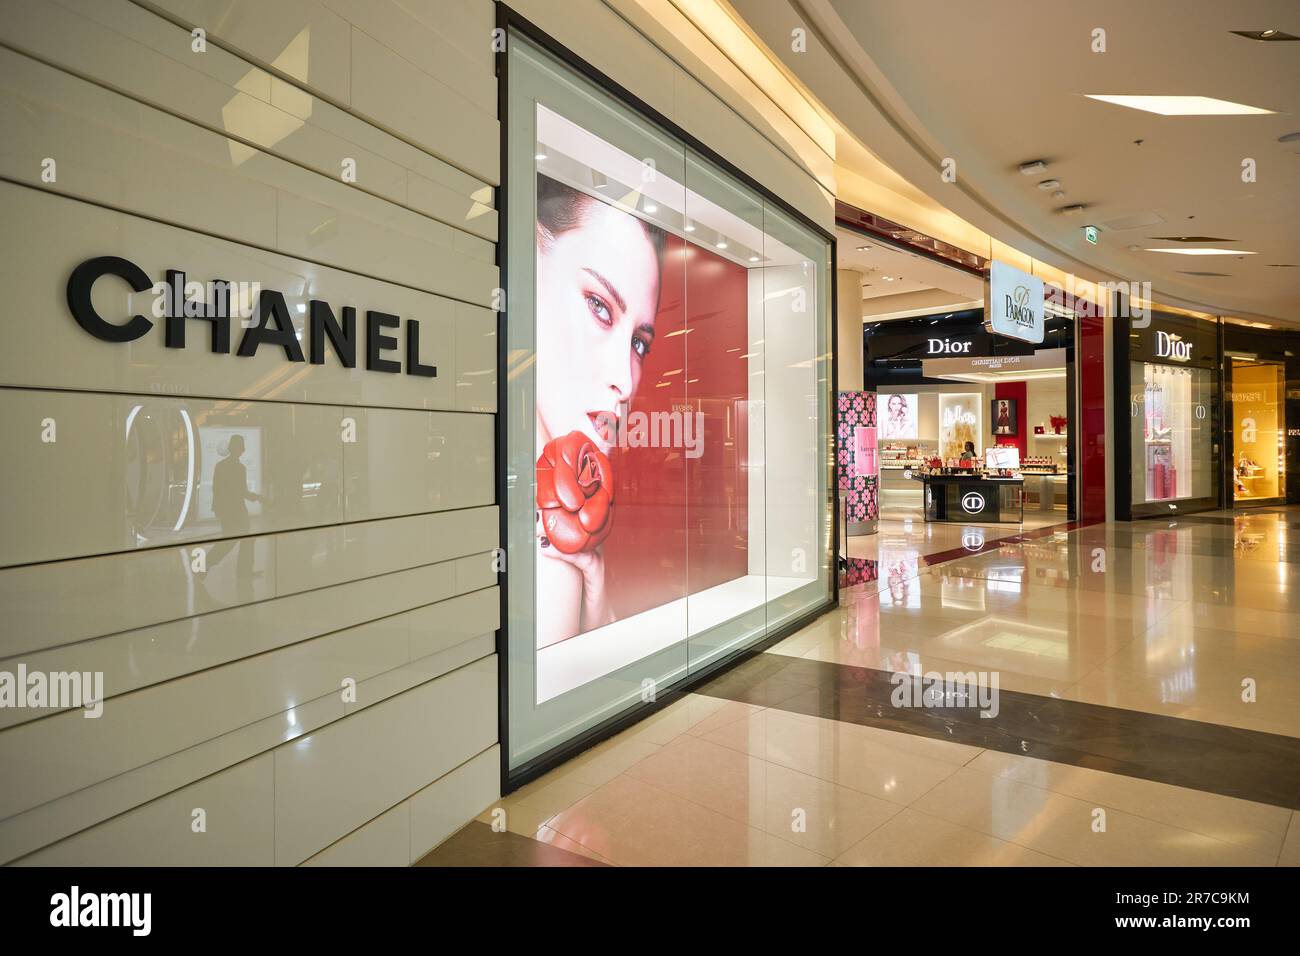 dreng Jakke Mission BANGKOK, THAILAND - CIRCA JANUARY, 2020: Chanel store shopfront at Siam  Paragon shopping mall in Bangkok Stock Photo - Alamy